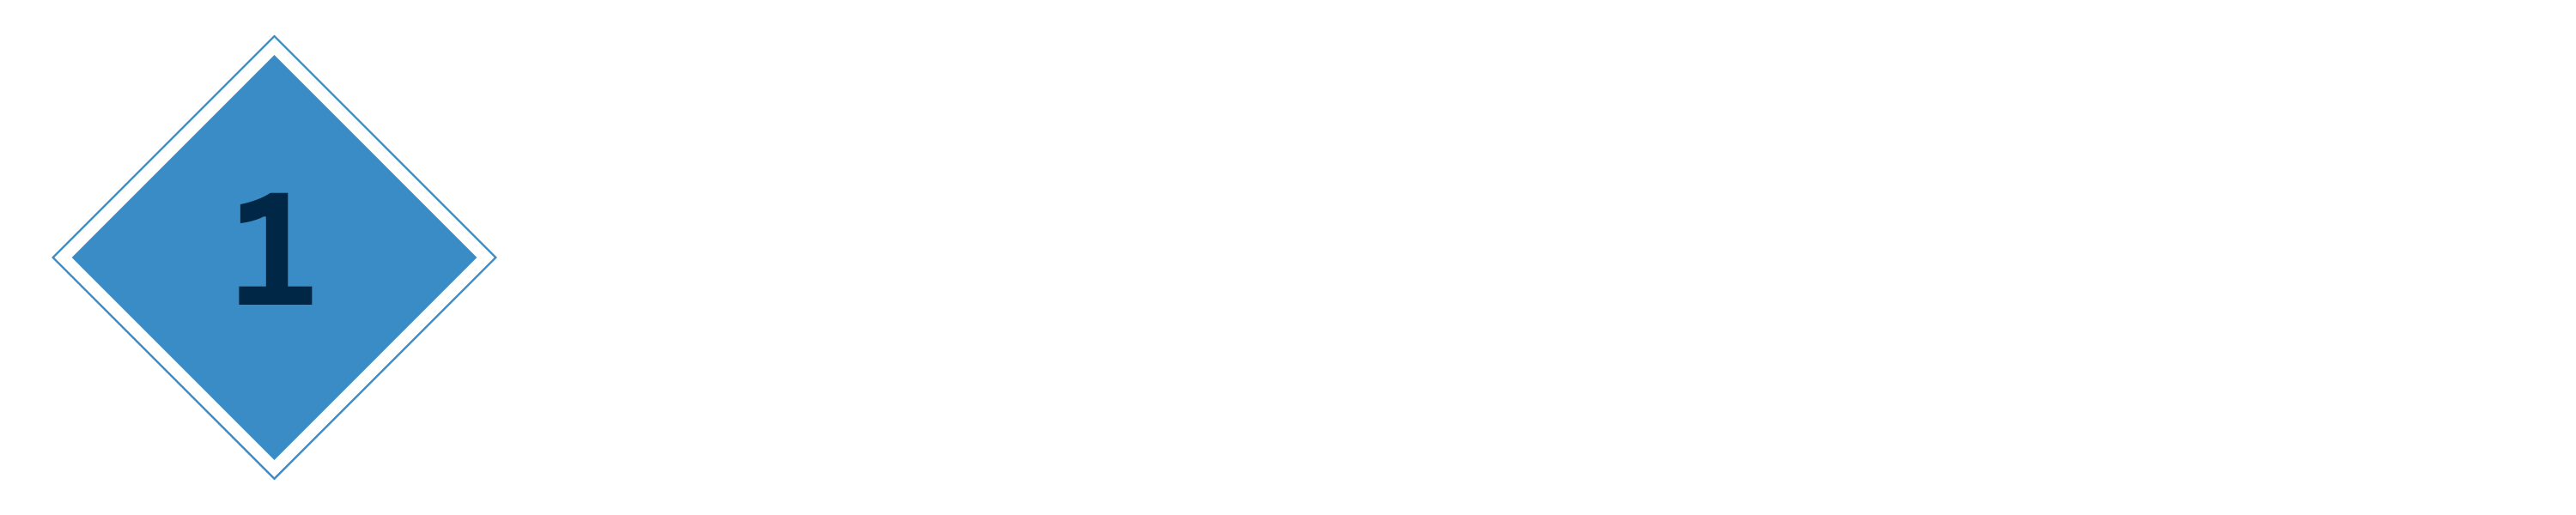 BNY-Mellon-Pershing-Logo-1024x571 (1)